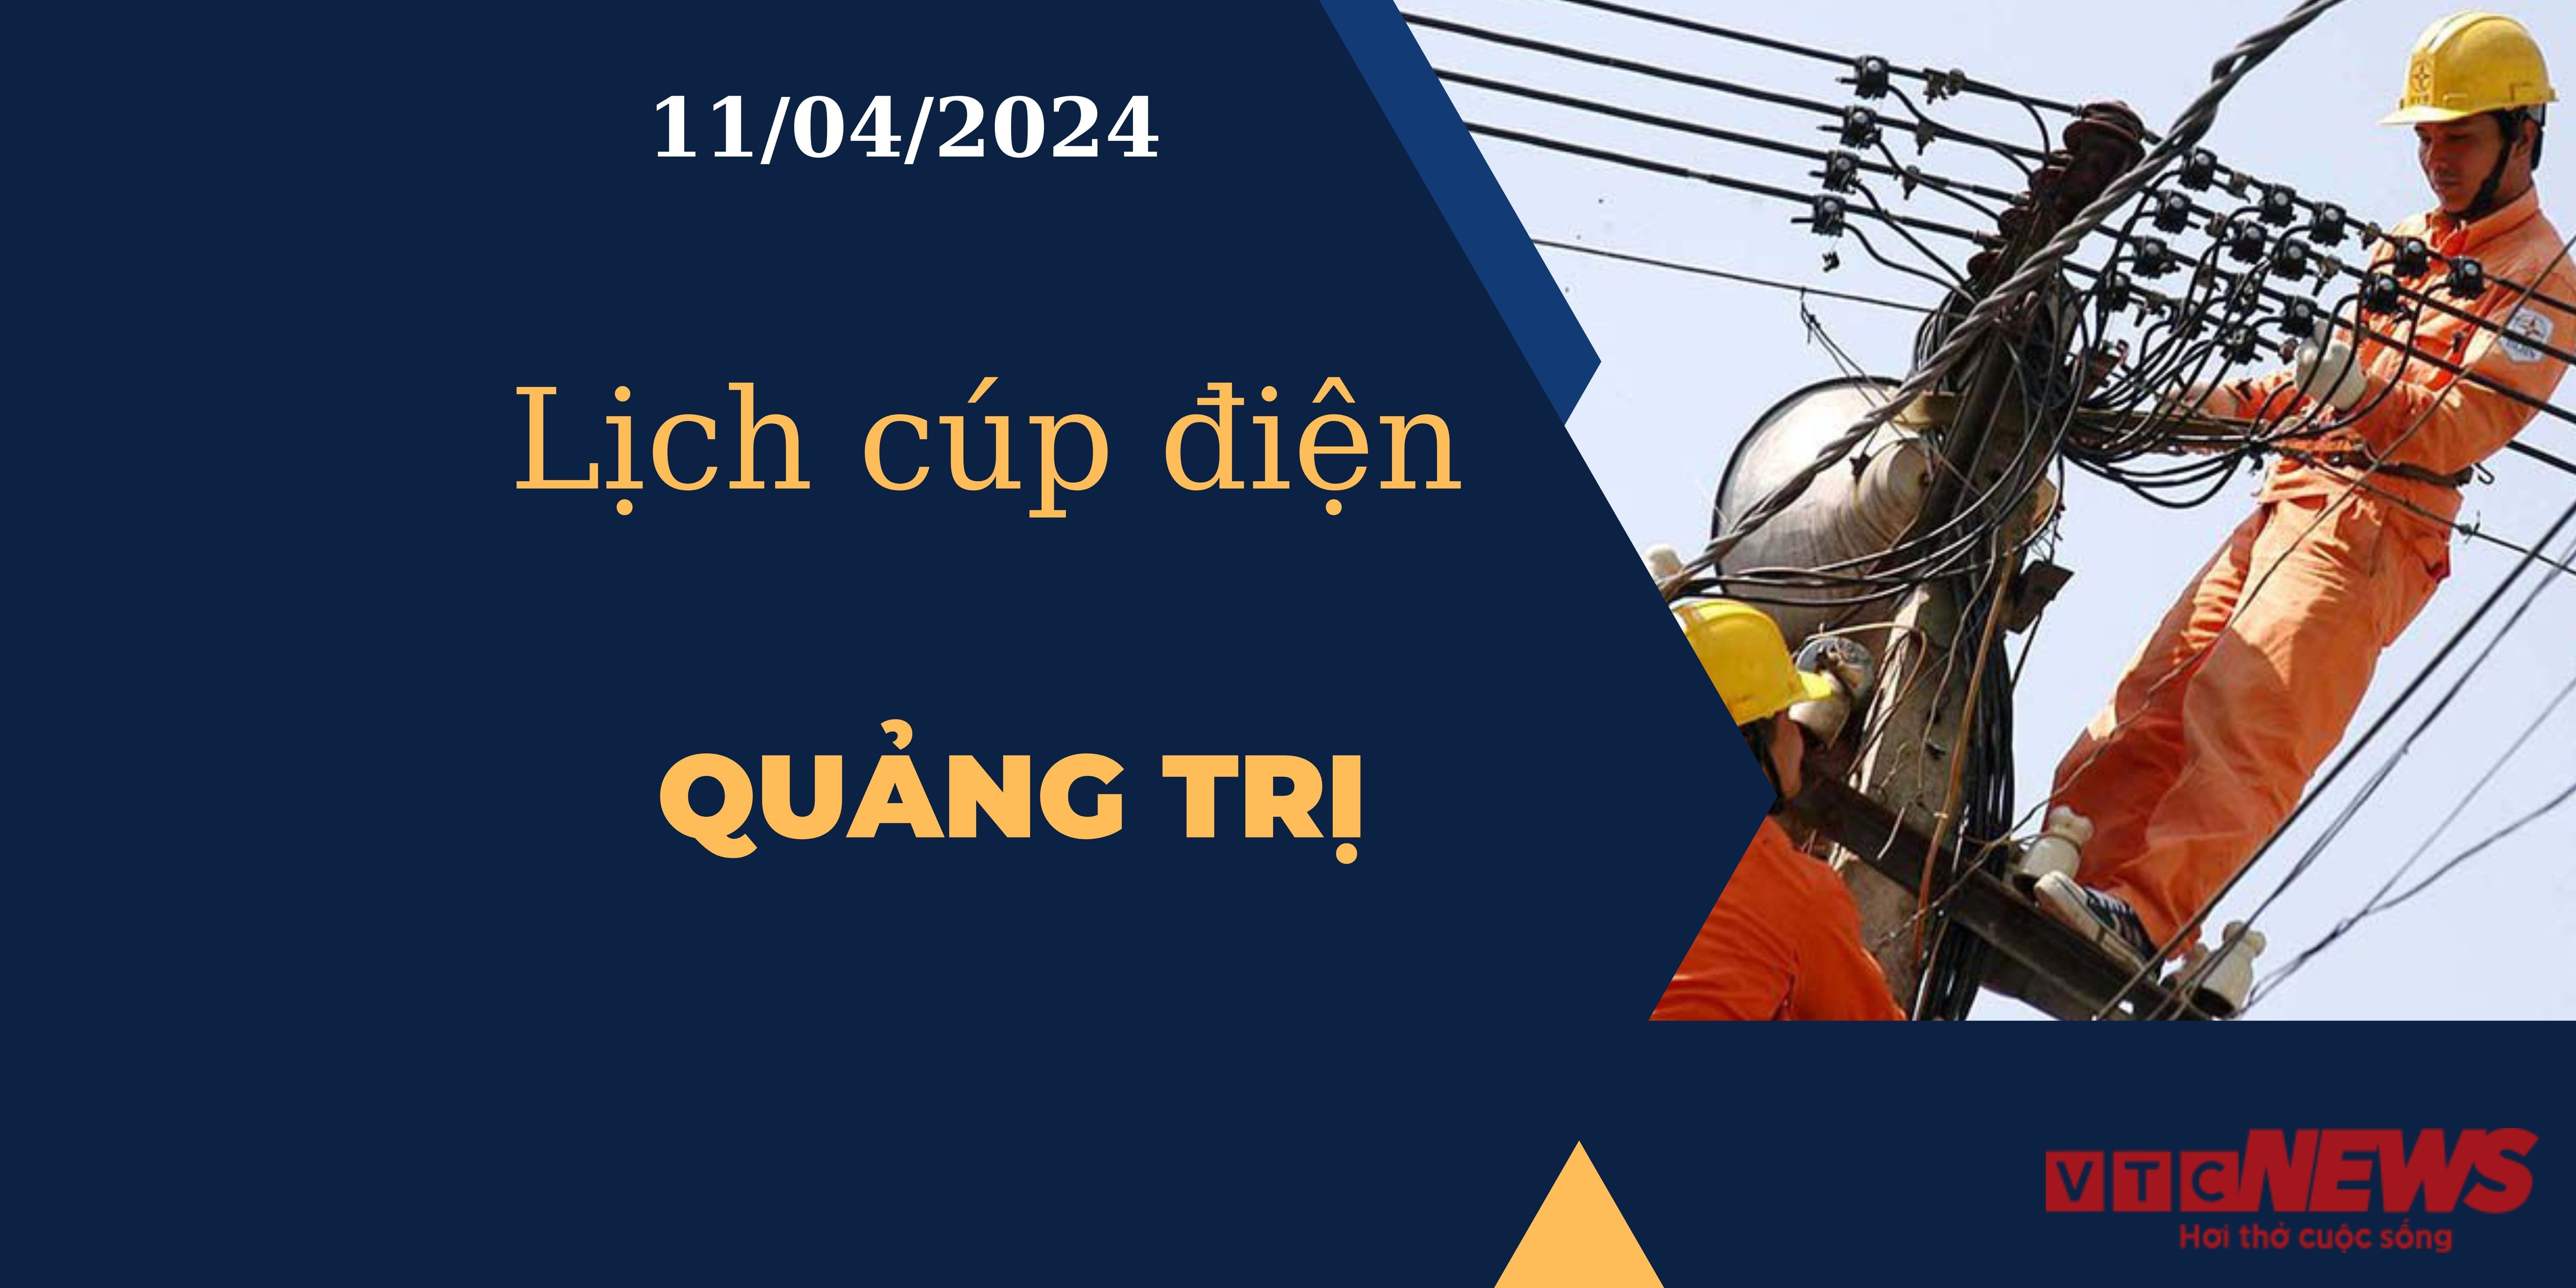 Lịch cúp điện hôm nay tại Quảng Trị ngày 11/04/2024